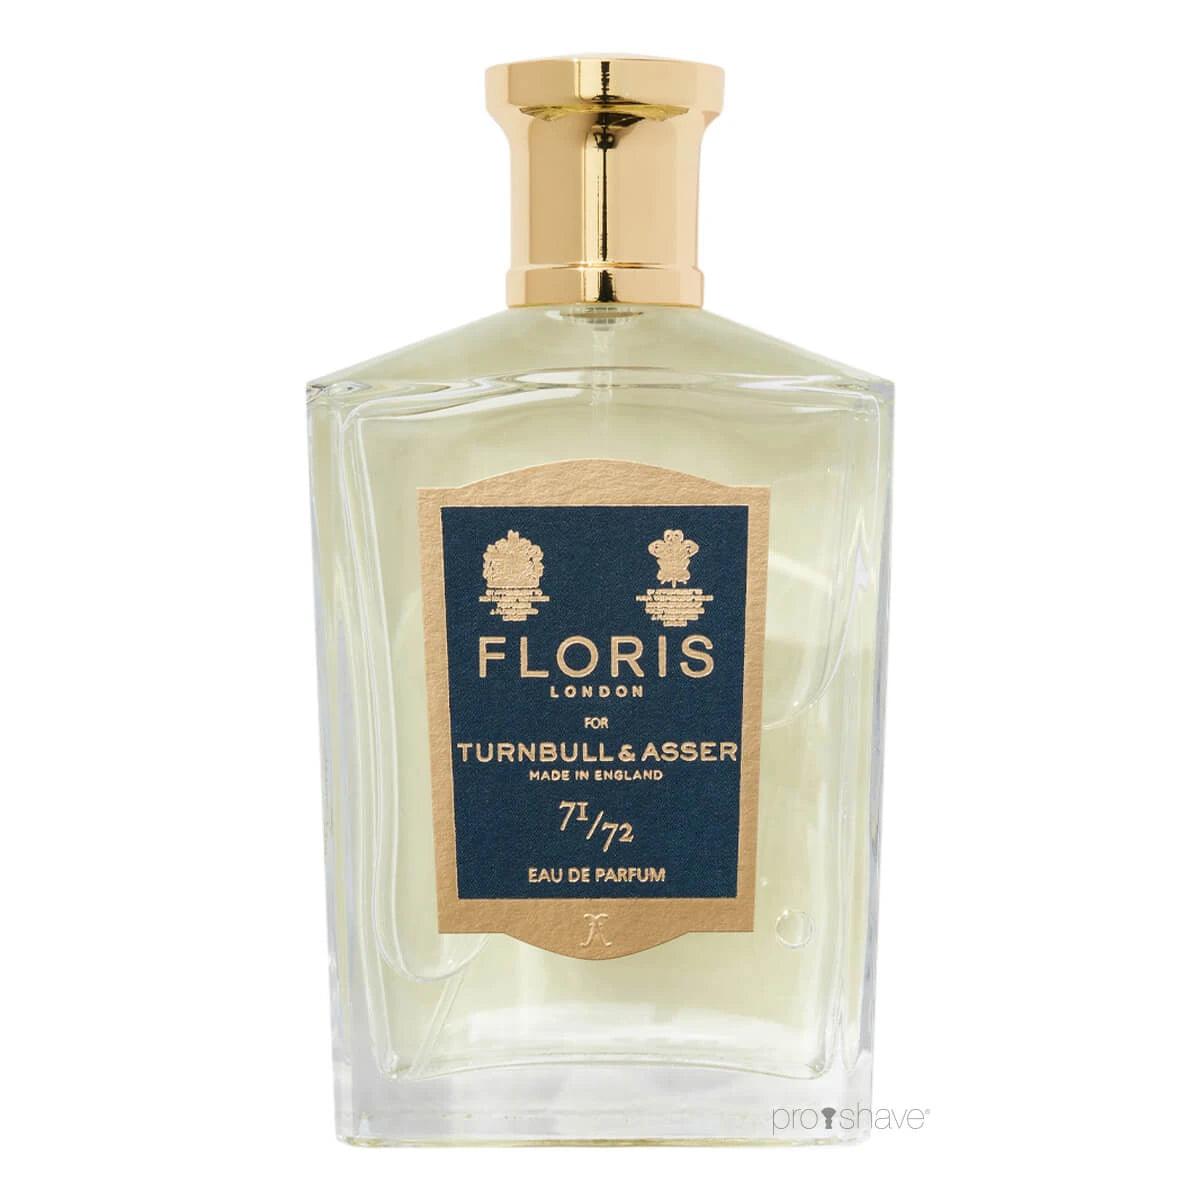 Floris 71/72, Eau de Parfum, 100 ml | Parfyme | Floris London | JK SHOP | JK Barber og herre frisør | Lavepriser | Best